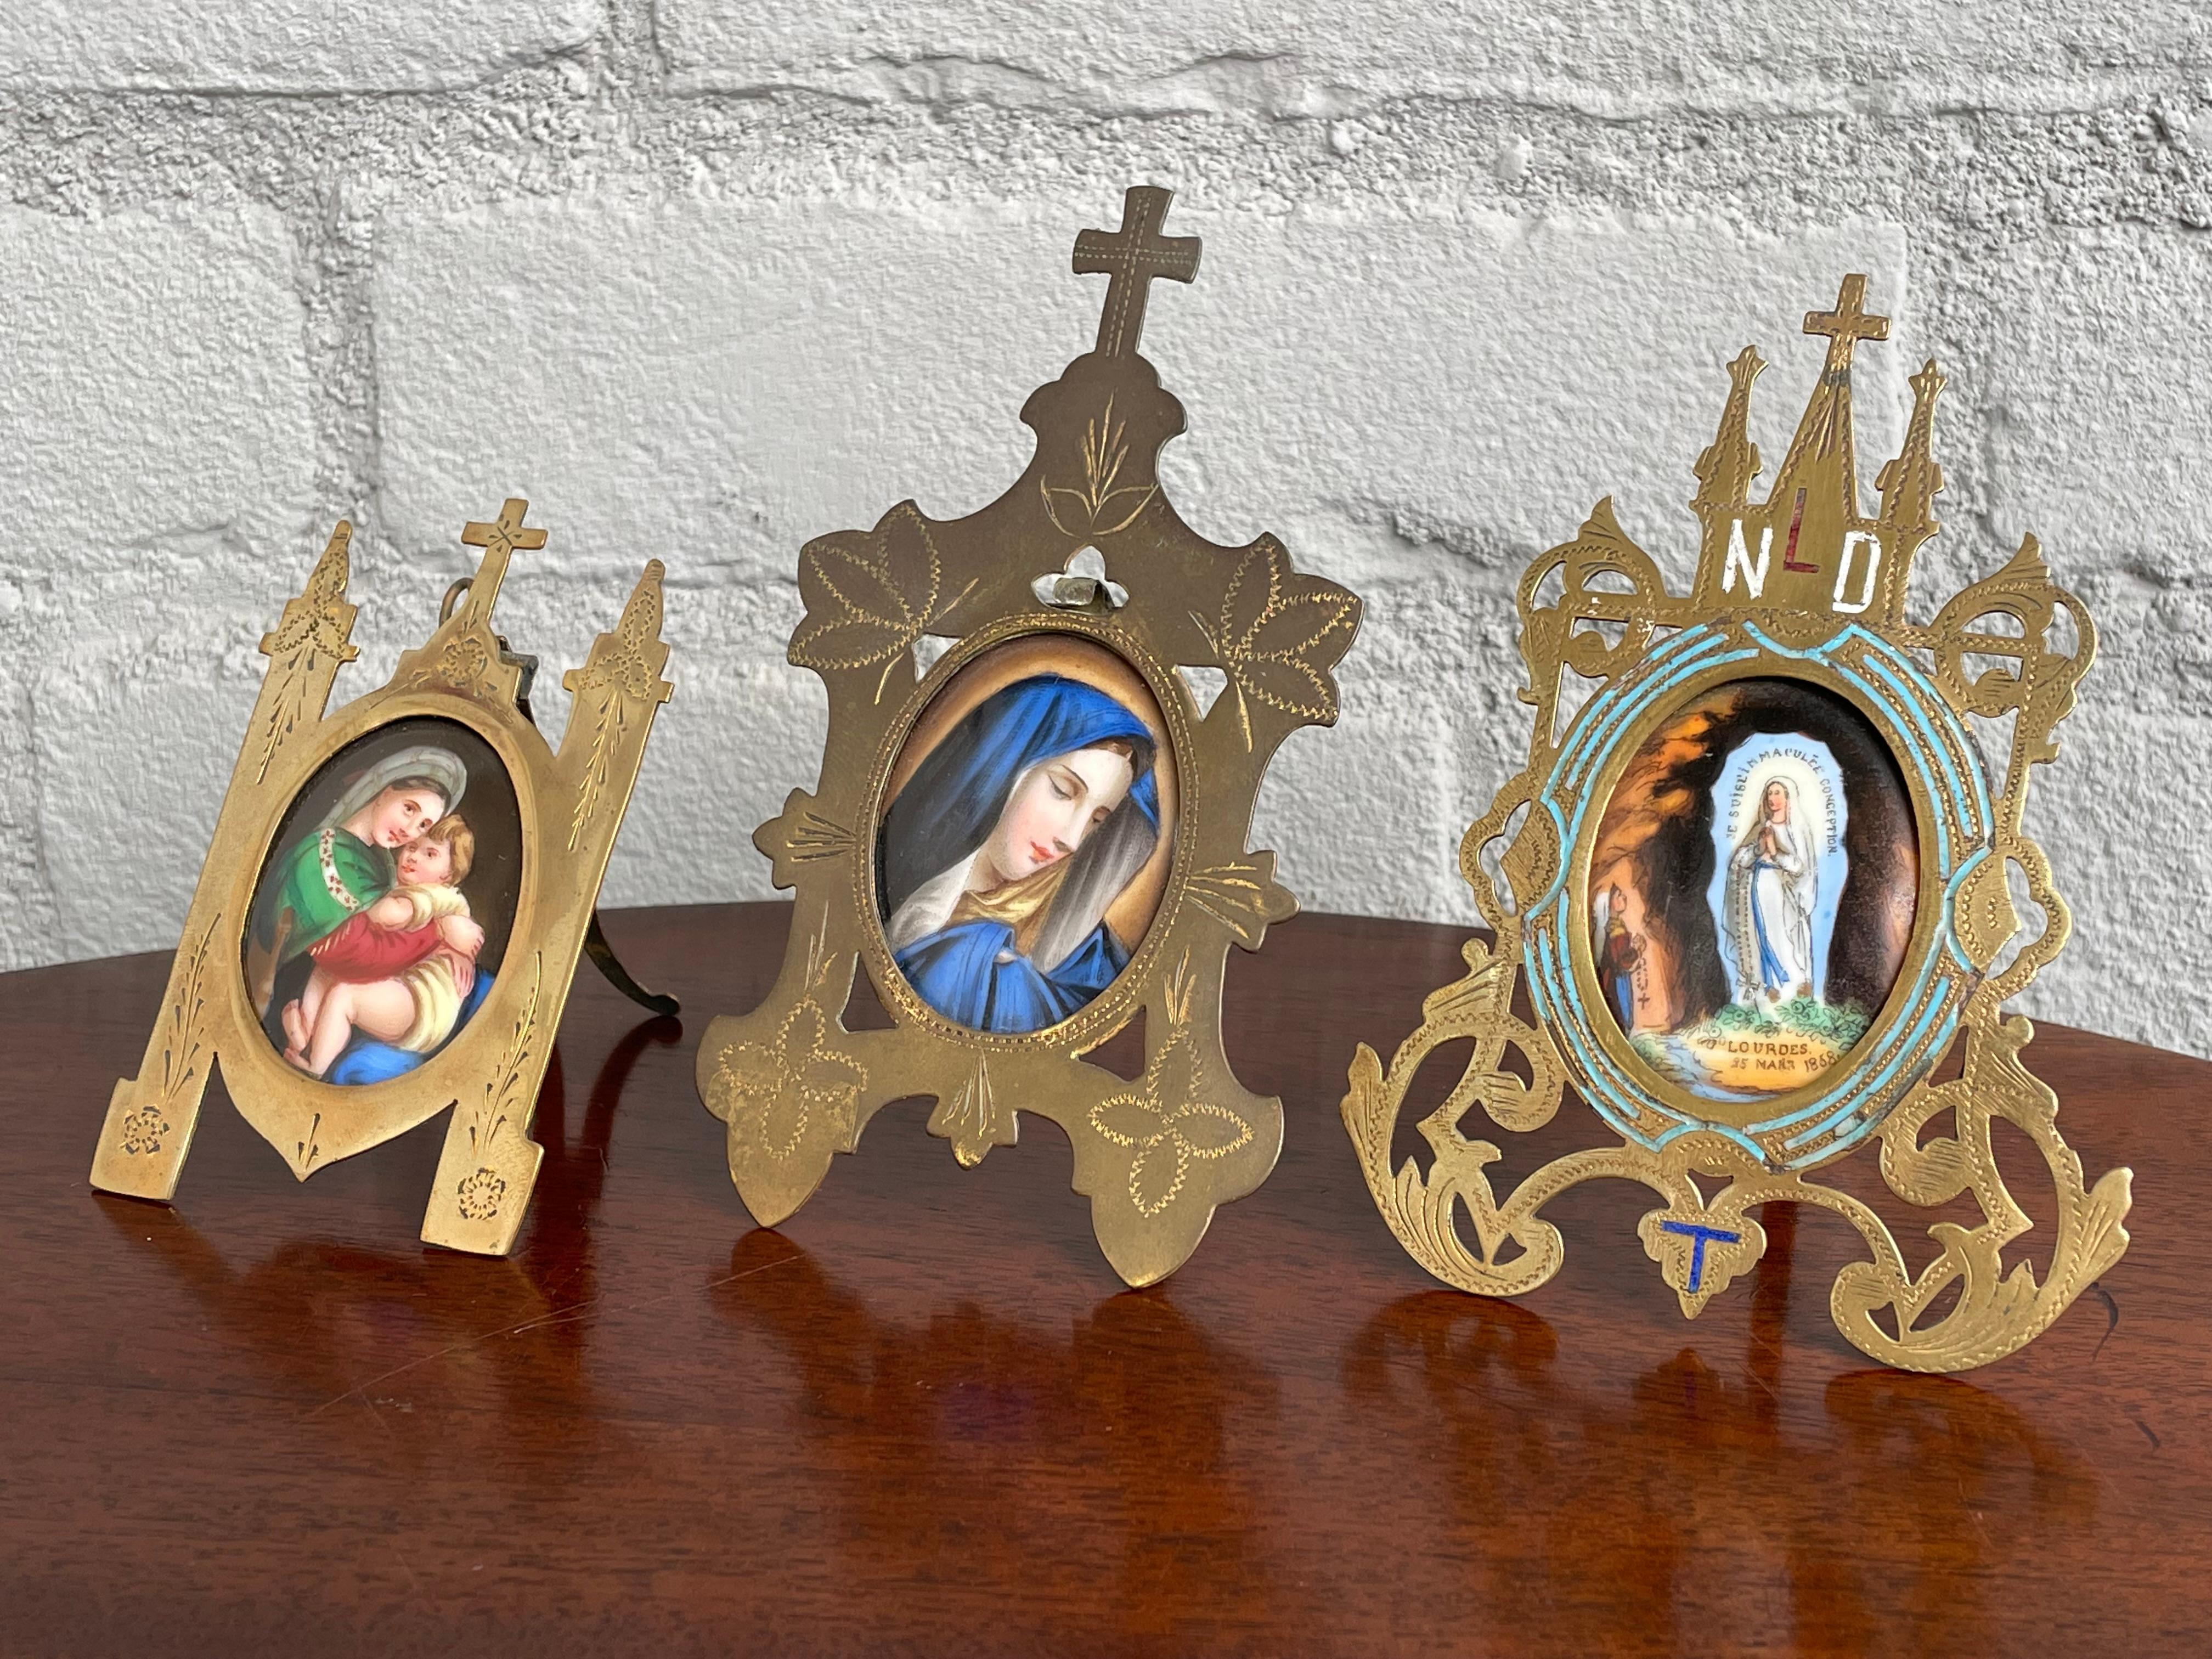 Magnifique ensemble de 4 tableaux de Marie et Jésus peints à la main sur des plaques de porcelaine.

Si vous deviez passer le reste de votre semaine à chercher des cadres photo gothiques anciens, vous auriez beaucoup de chance d'en trouver un. Non